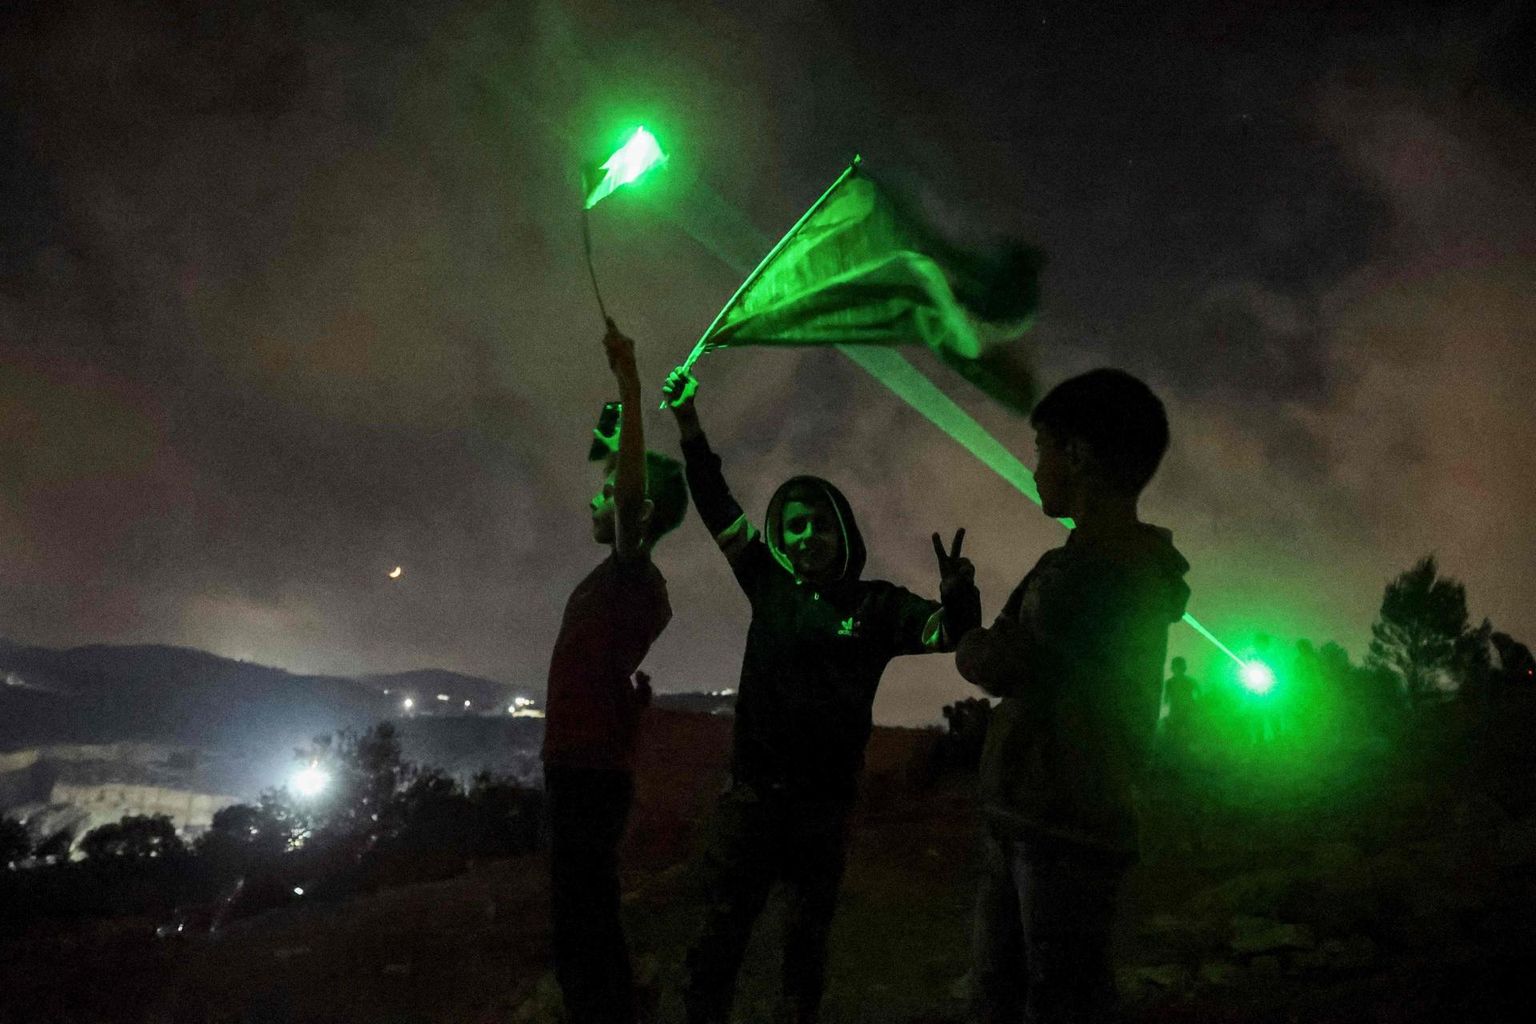 Laserosuteid kasutavad Palestiina noored protestimas Iisraeli asunike vastu Nabluse linnas tänavu juulis. Laserosutid on piisavalt võimsad, et silma sihitult inimest tegutsemisvõimetuks muuta, halvemal juhul võib see kaasa tuua pika haiglaravi ja nägemiskaotuse.